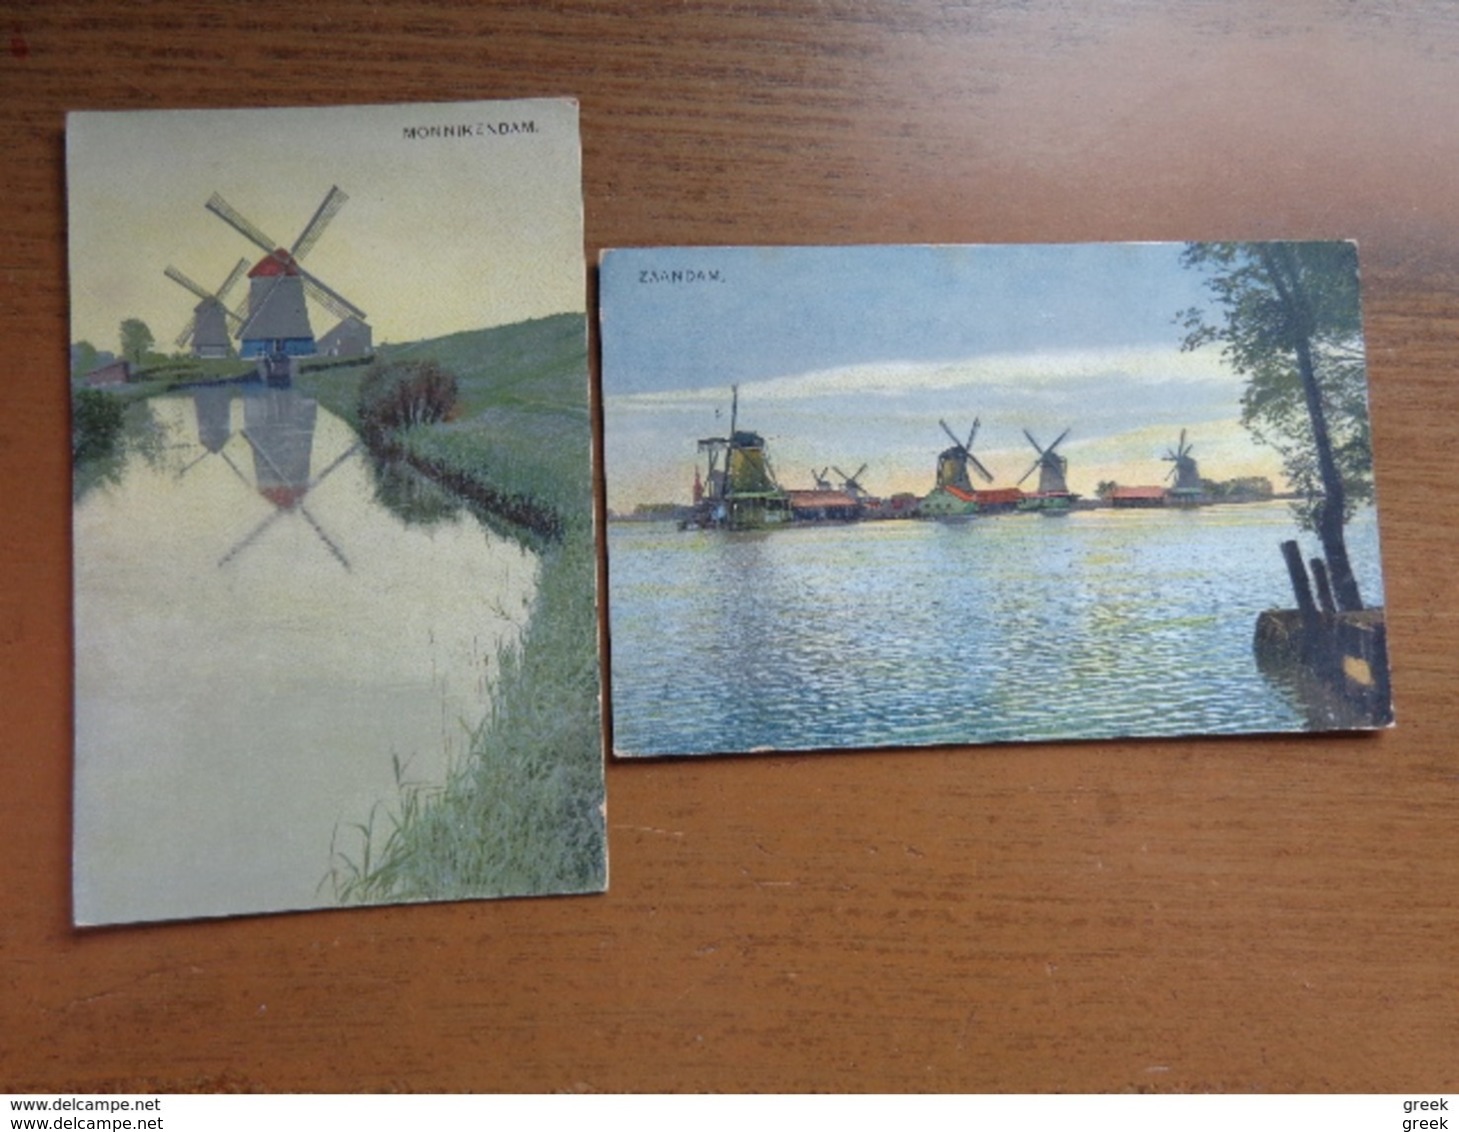 Doos postkaarten (3kg190): Alllerlei landen en thema's (zie enkele foto's)